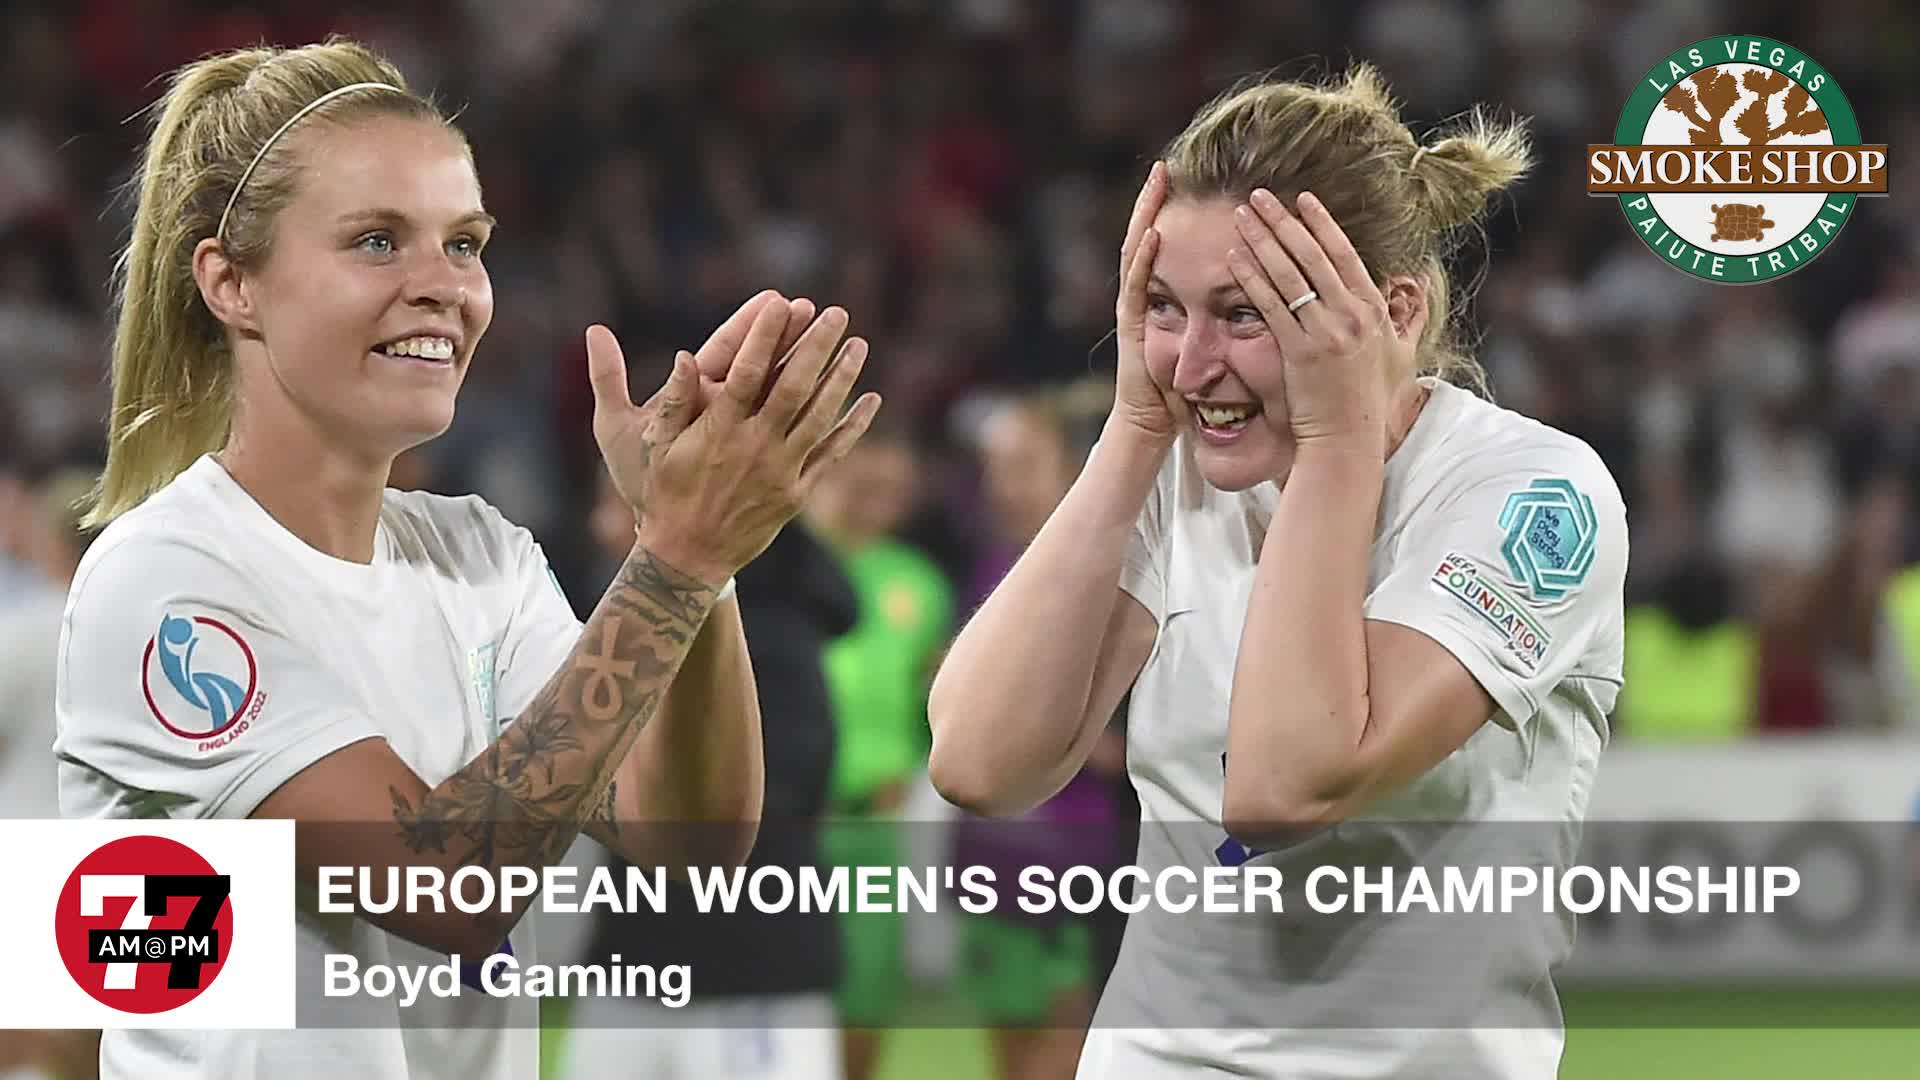 European Women’s soccer championship odds